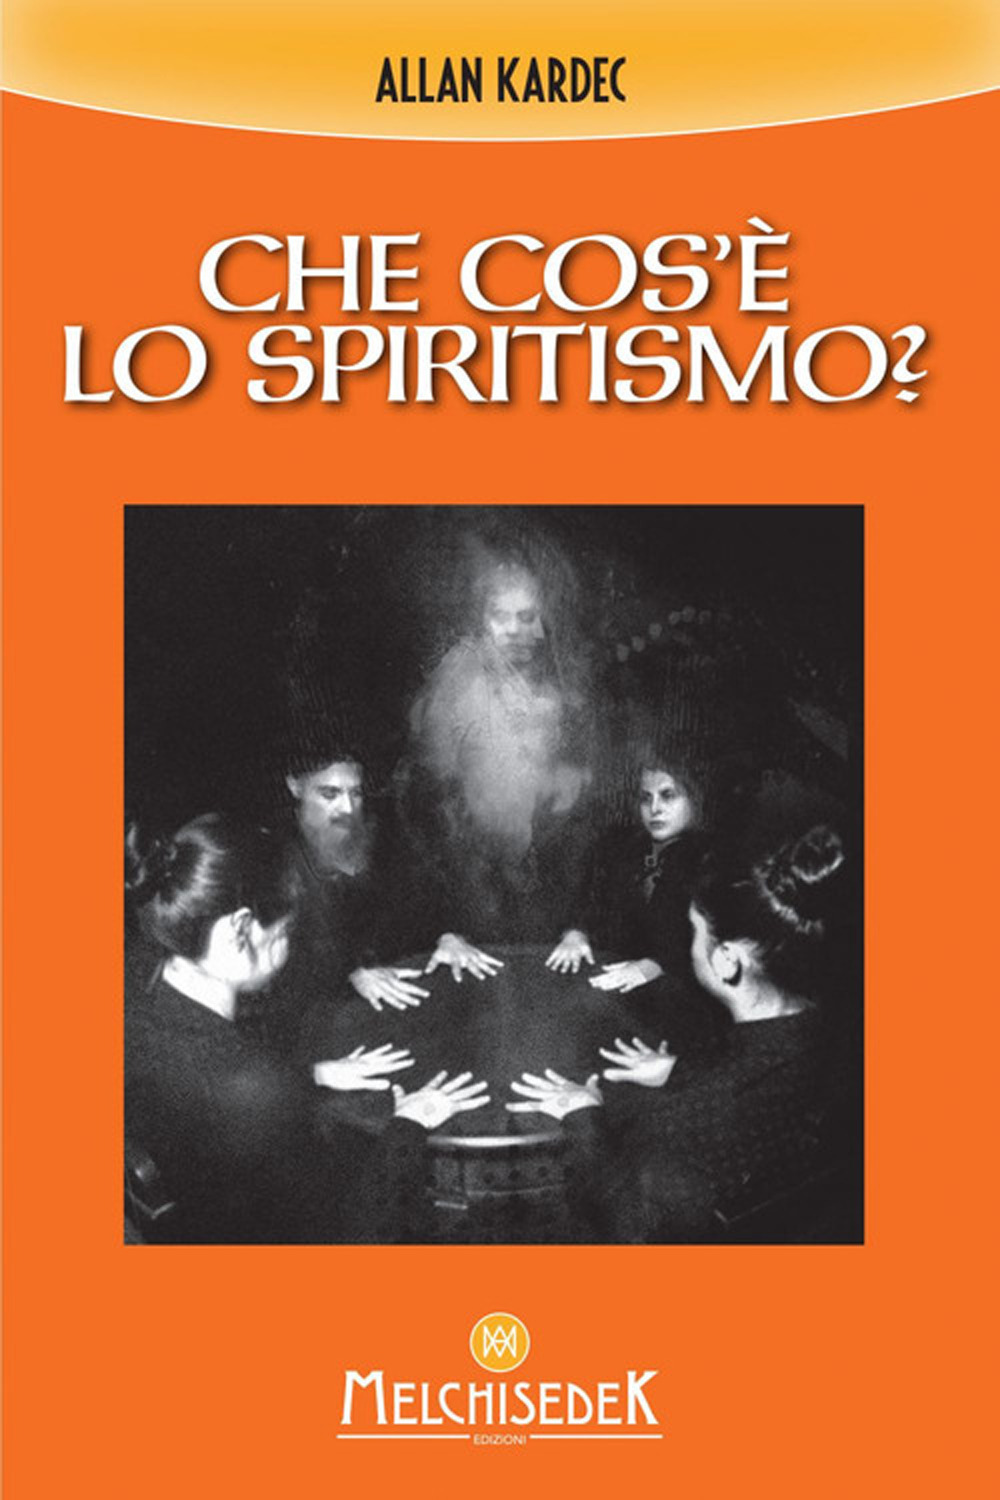 Image of Che cos'è lo spiritismo?